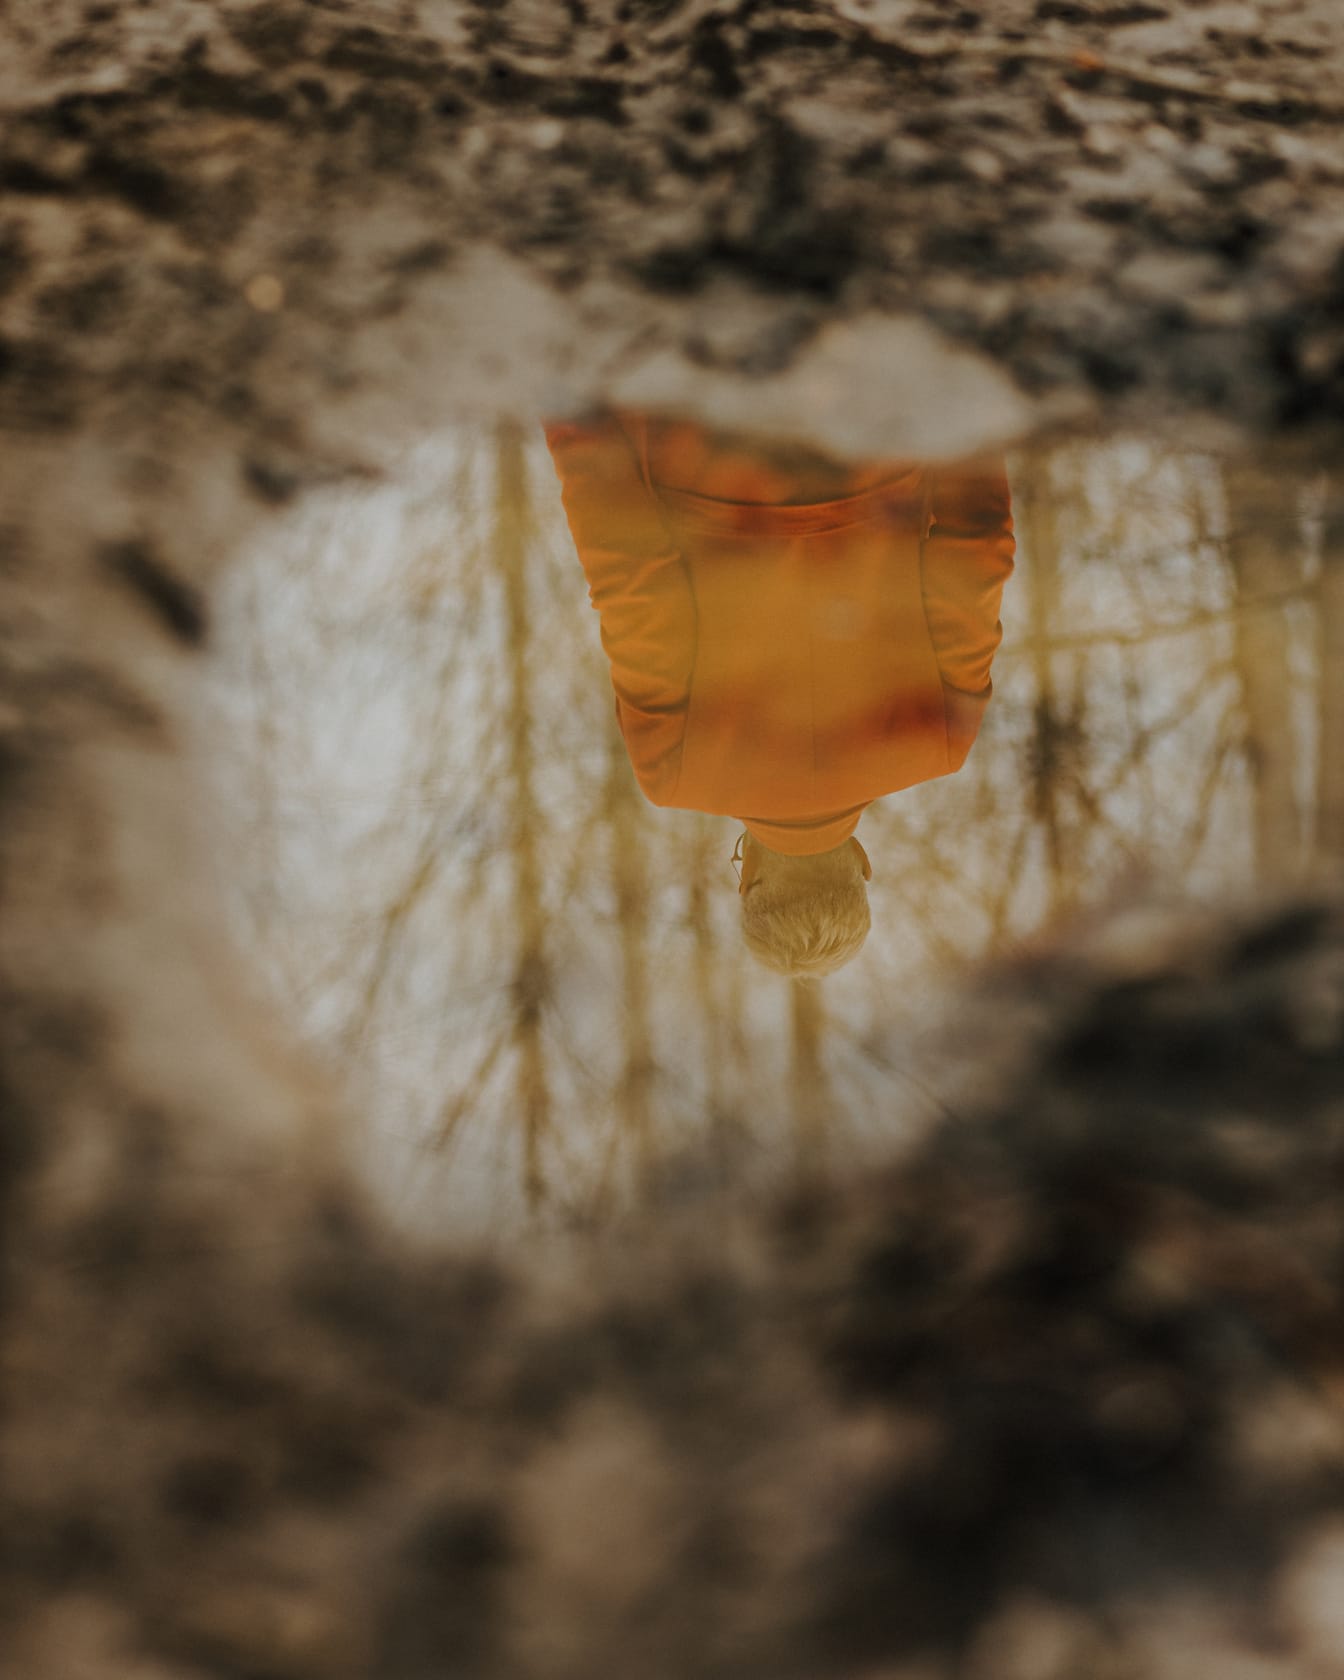 Reflexo da pessoa em pequena lagoa no chão